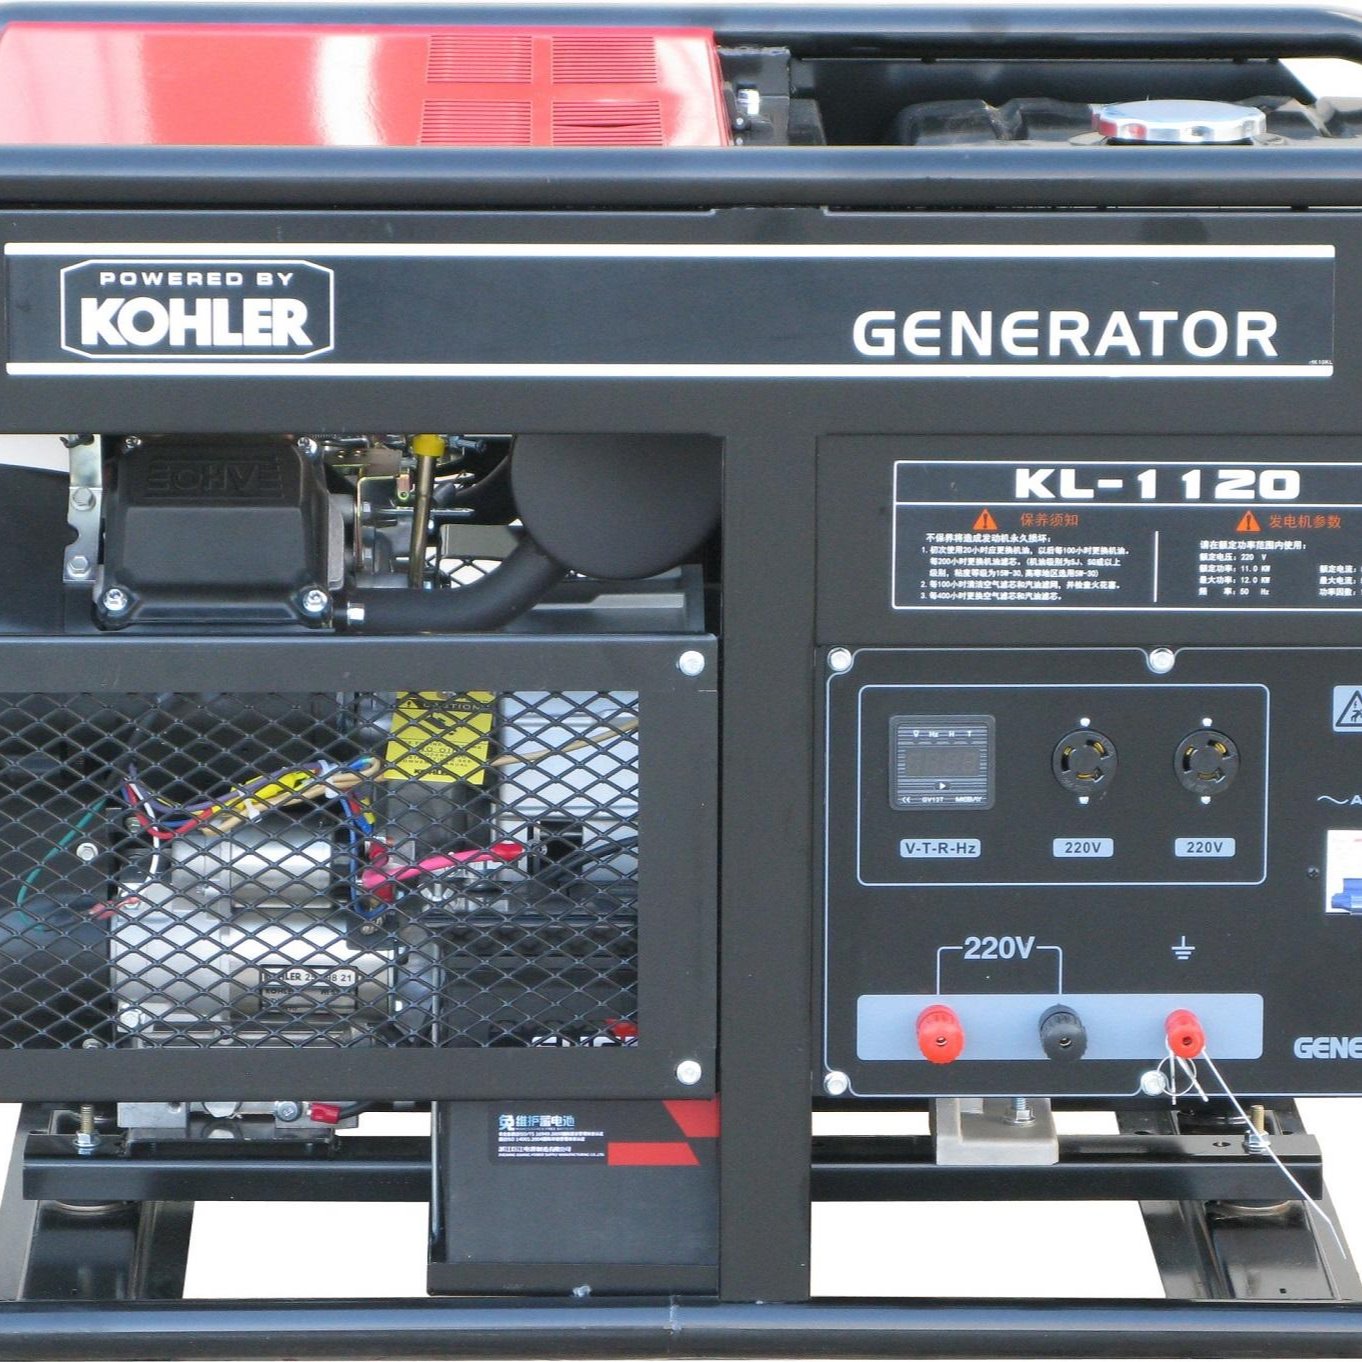 车载汽油发电机 12kw 科勒汽油发电机 单相 电动 KL1120 便携式发电机